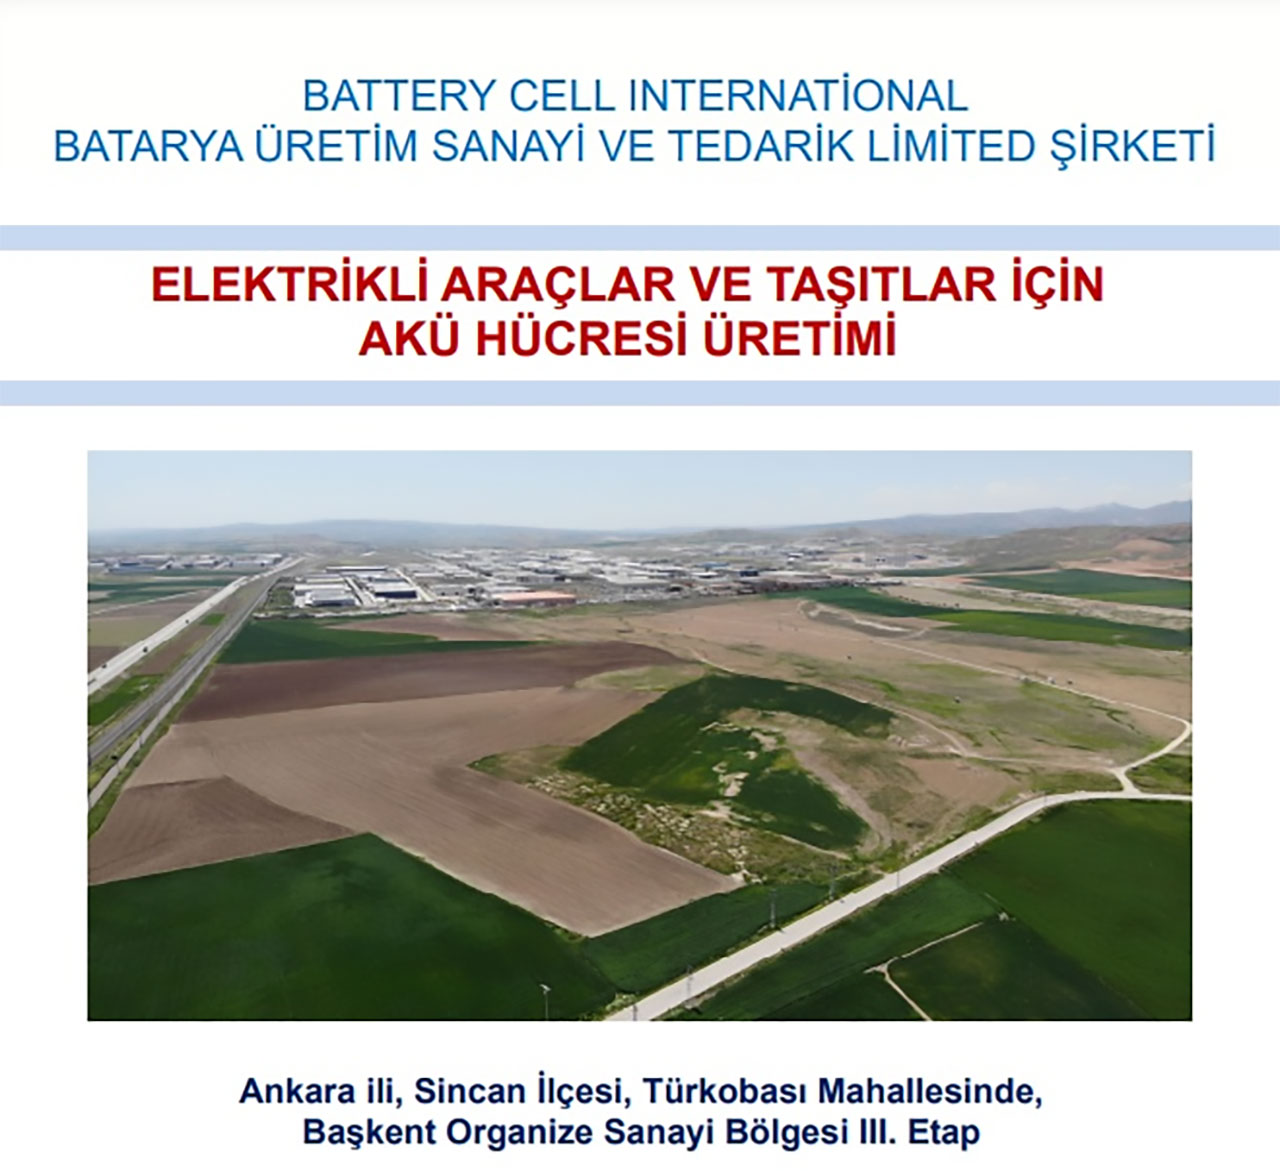 Meral Erden: Ford'Un Türkiye'Deki Batarya Fabrikasının Maliyeti Açıklandı 1